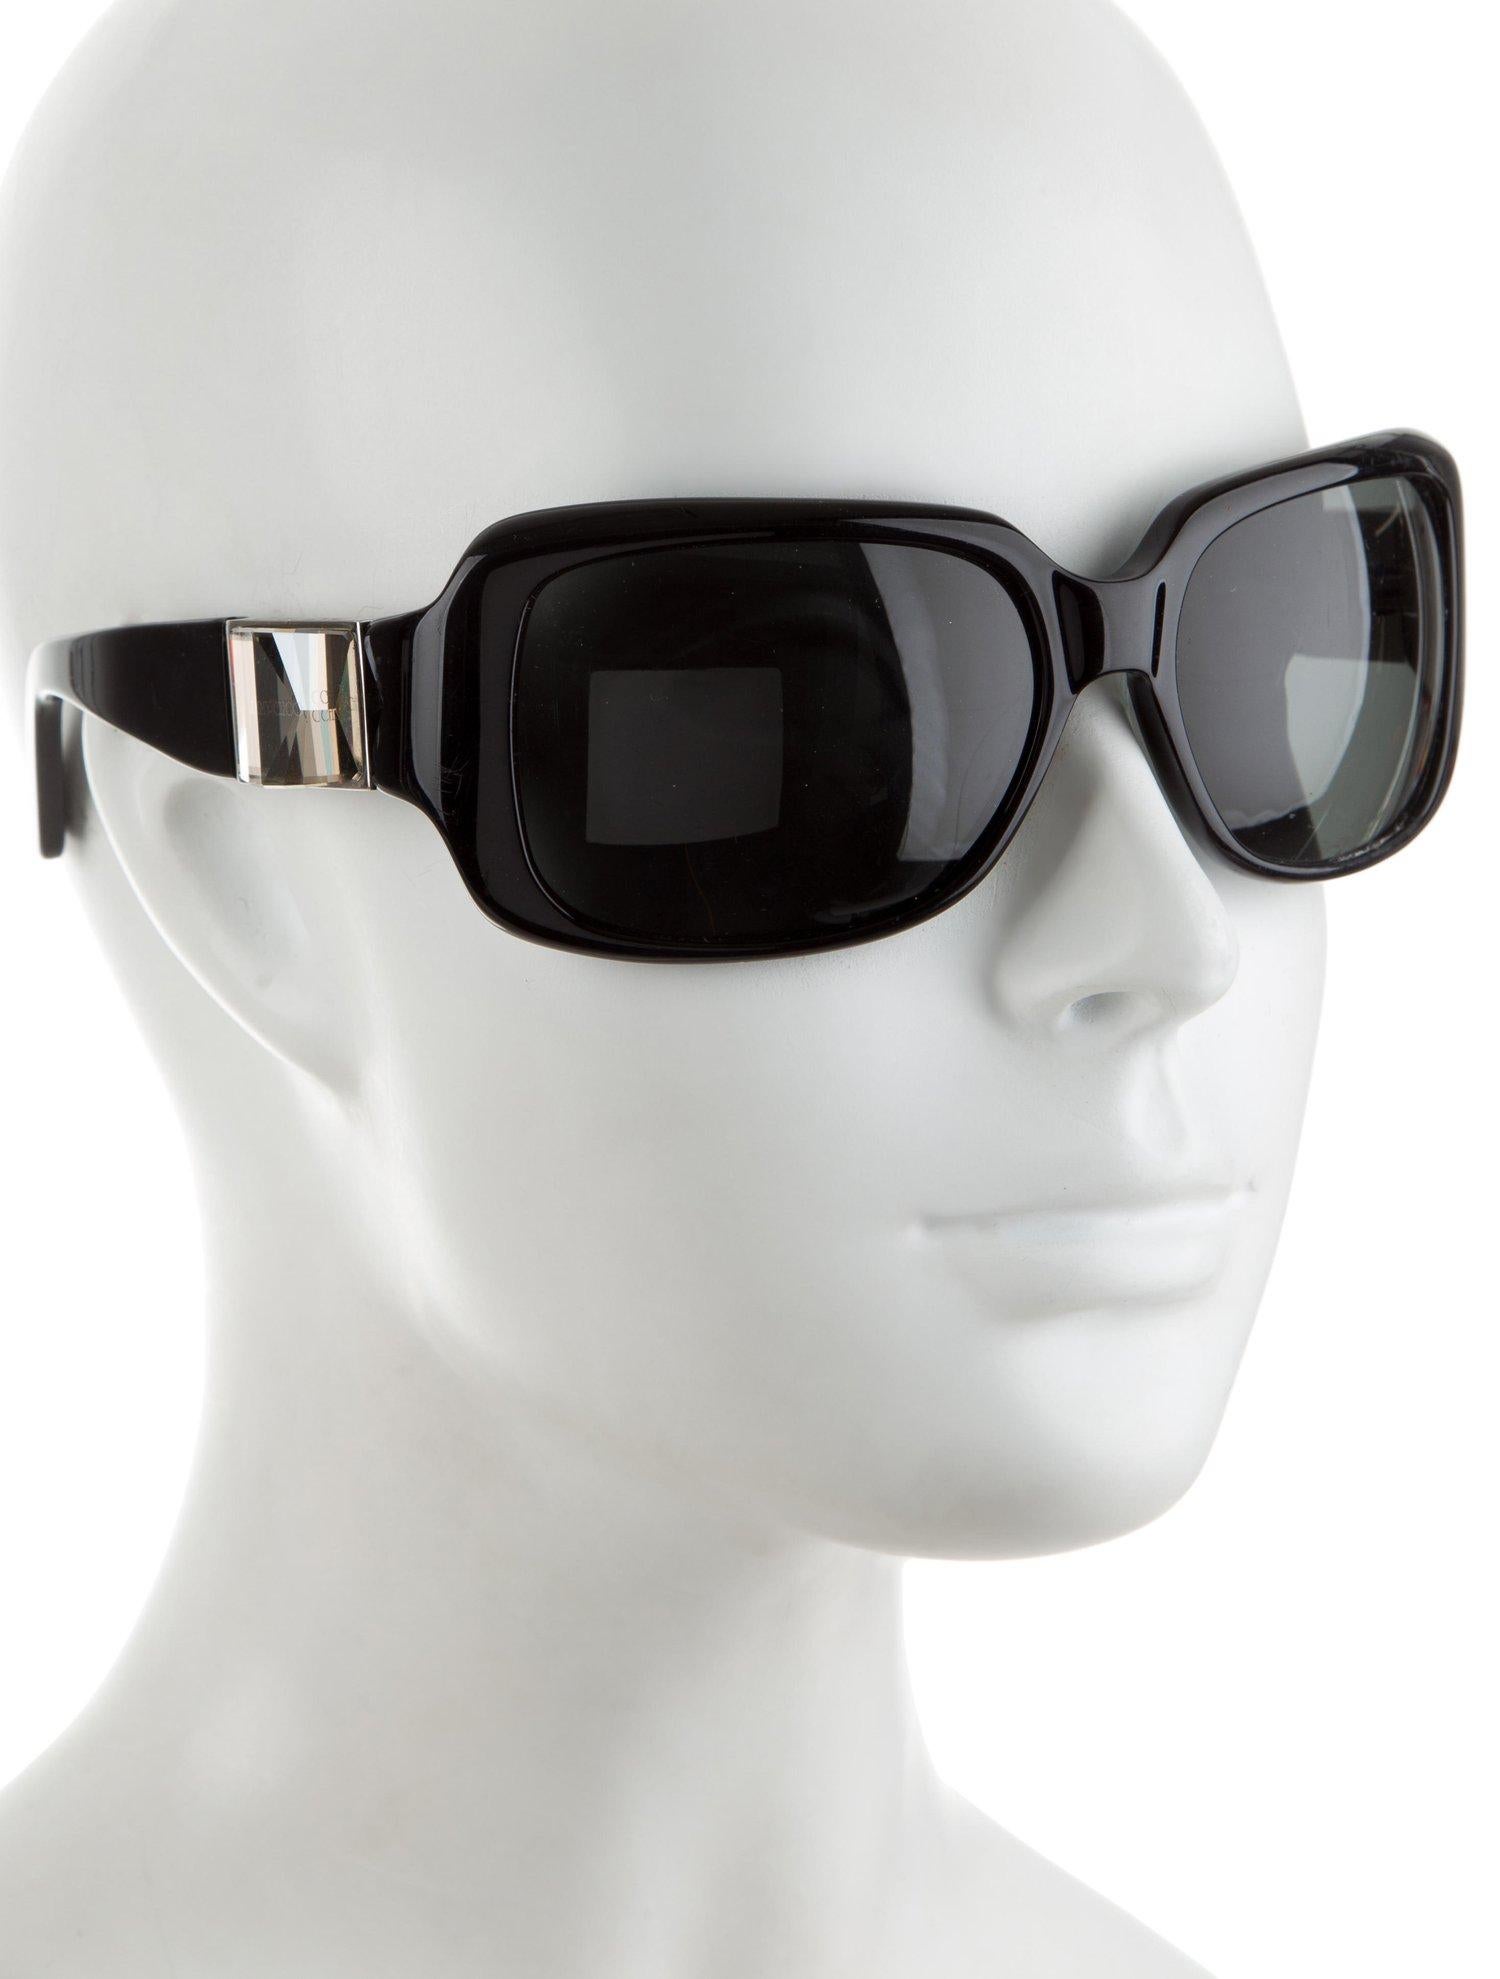 Neu Jimmy Choo Swarovski-Sonnenbrille mit Etui und Schachtel $595 Damen